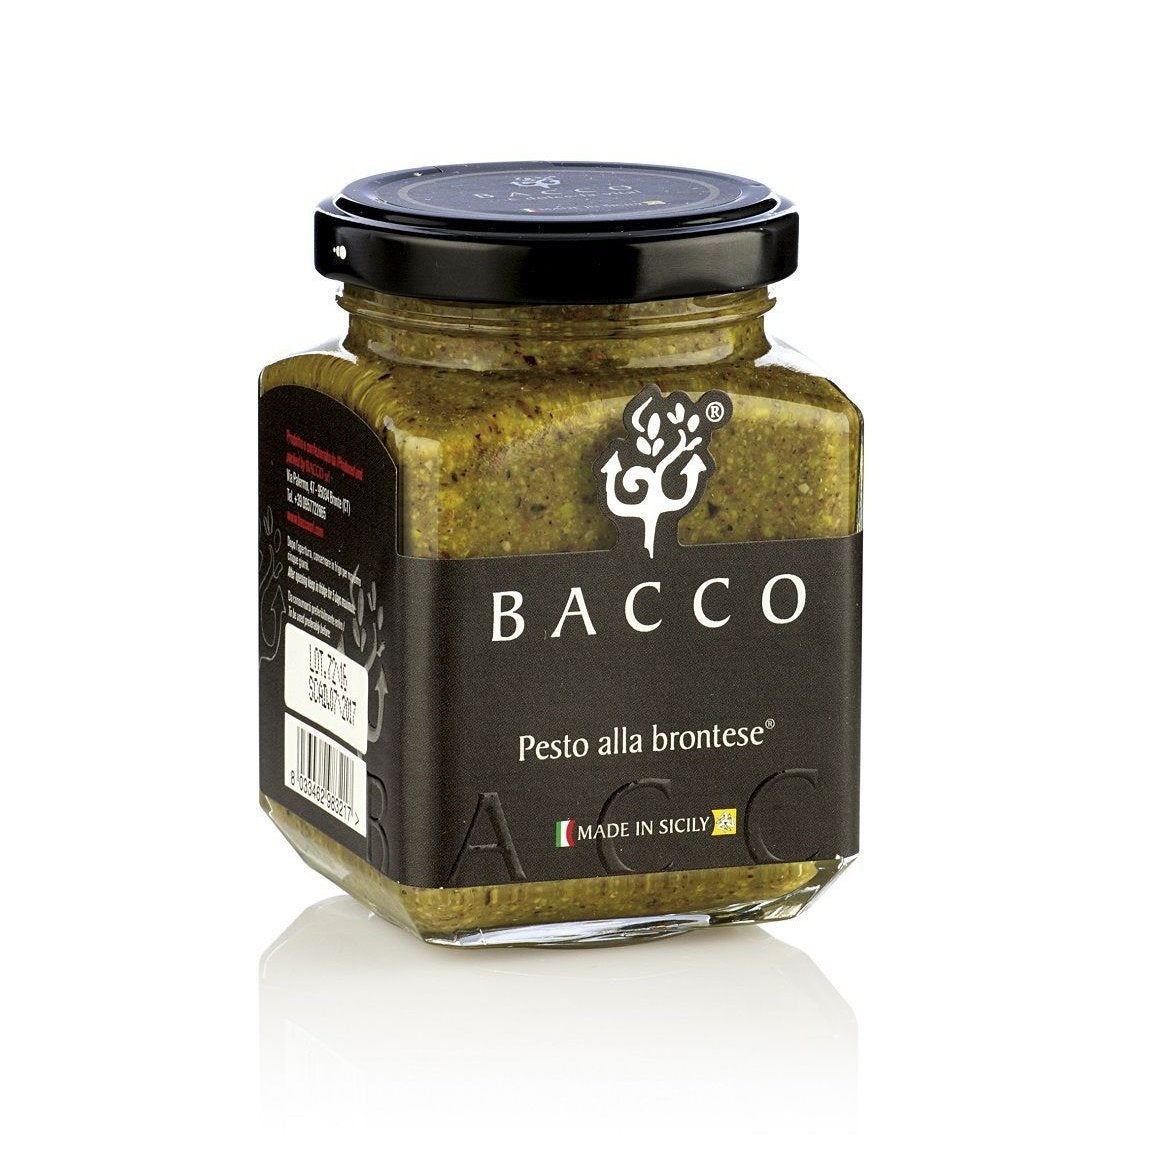 Pesto alla Brontese 80% Pesto Bacco 